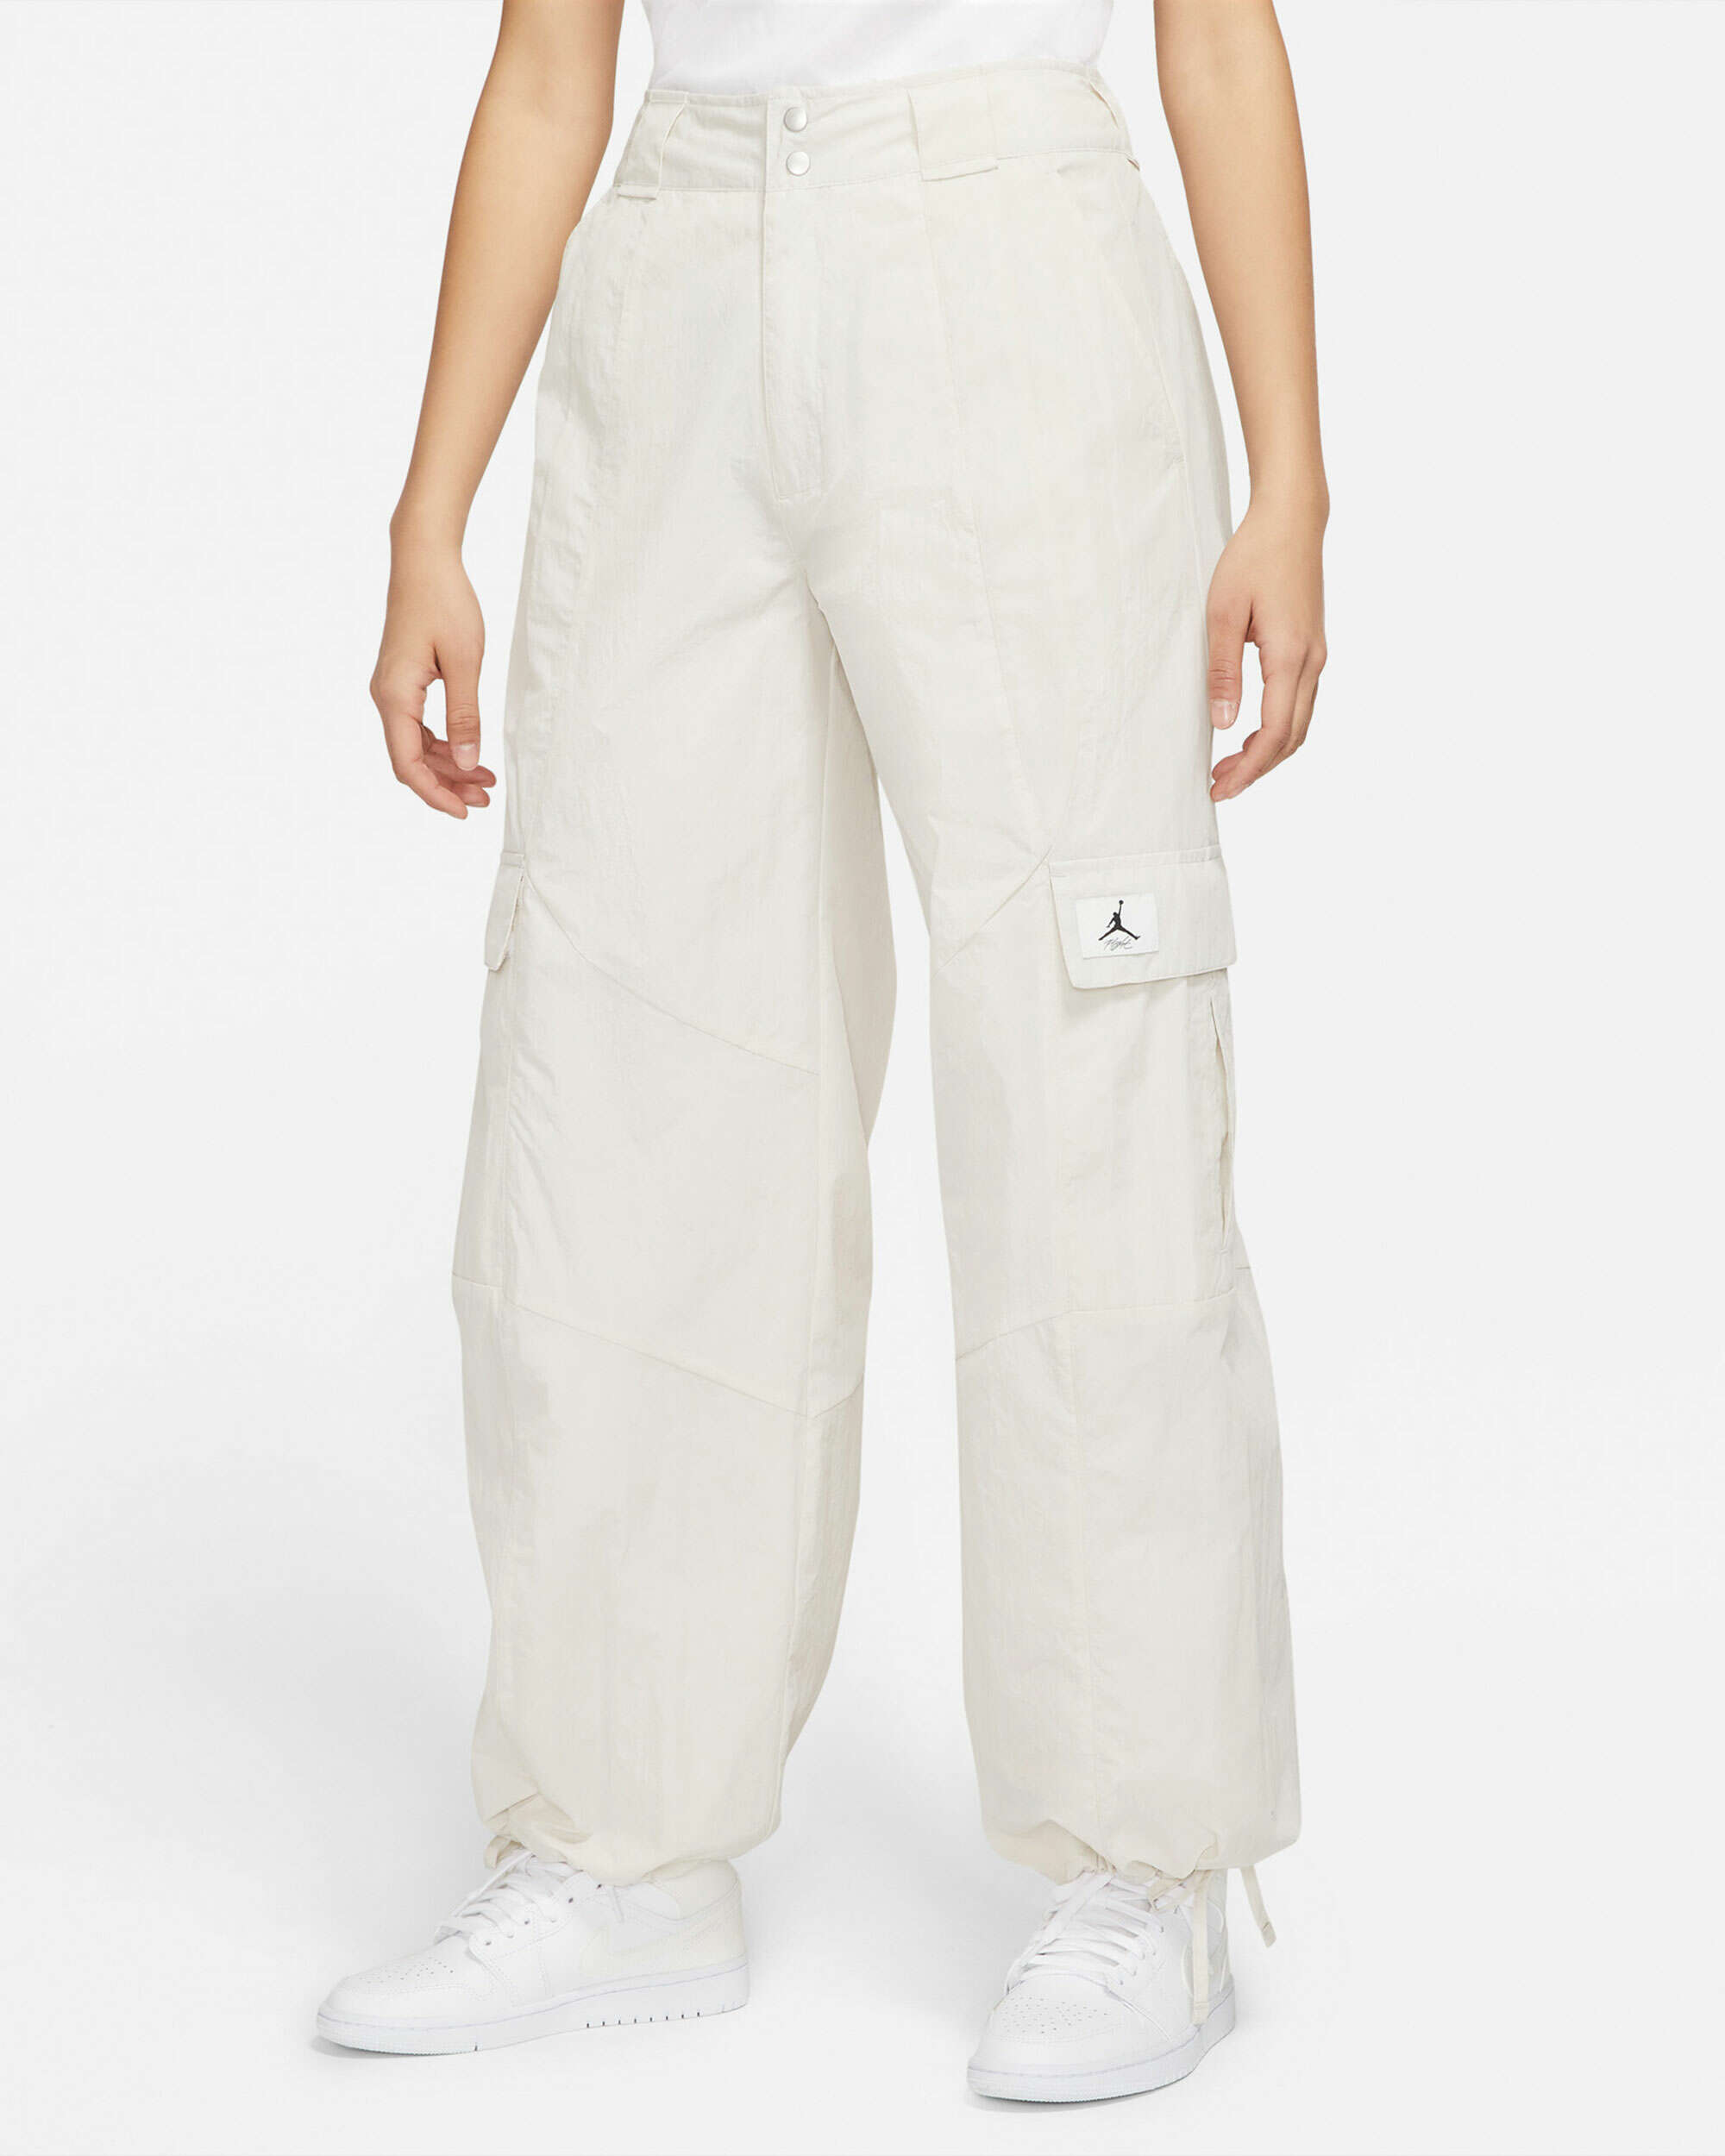 Jordan Essentials Women's Utility Pants Weiß DM5175-104| Online Einkaufen  bei FOOTDISTRICT